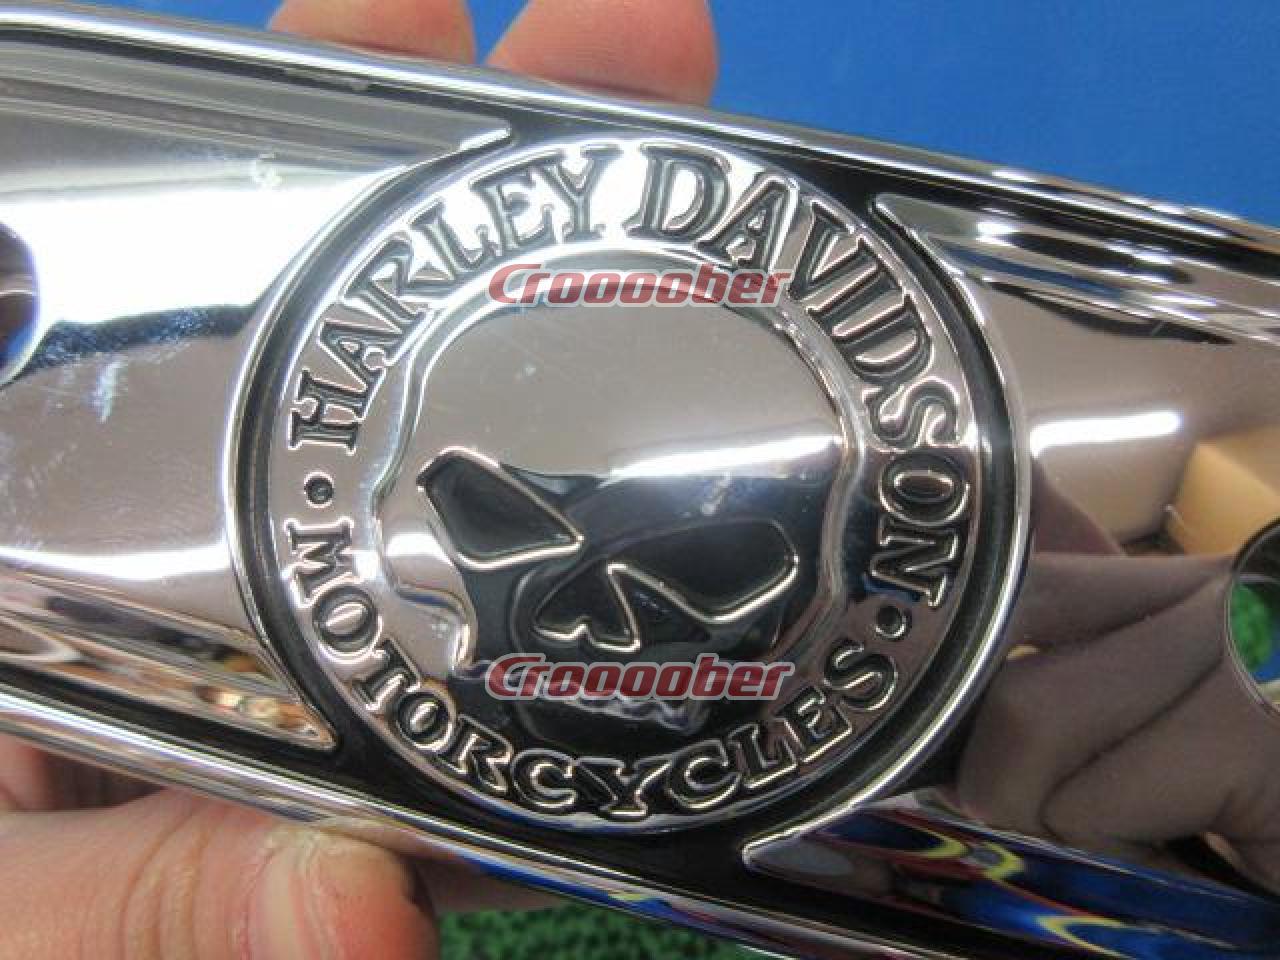 Harley-Davidson(ハーレーダビッドソン) 純正オプション ウィリーG 